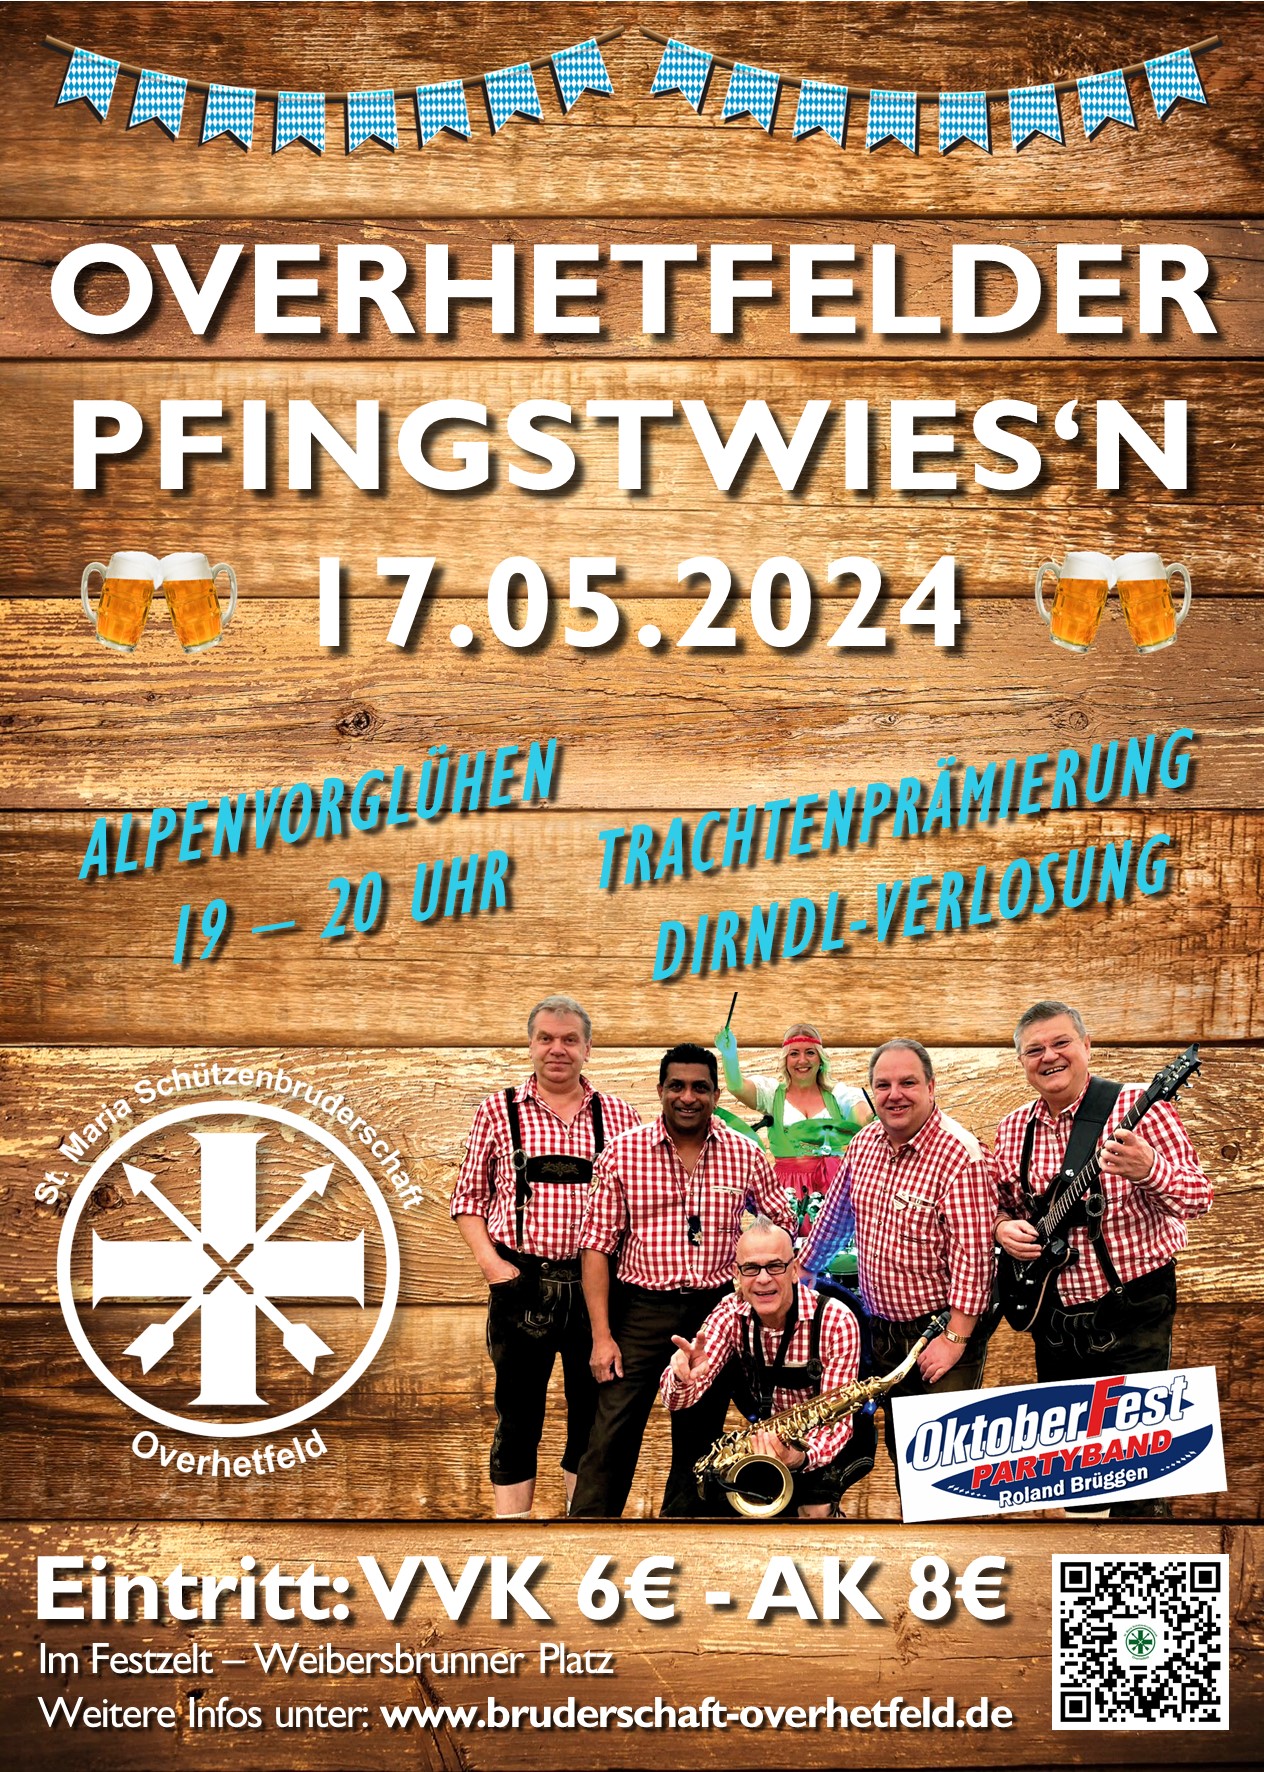 Flyer im alpinen Layout zu den Overhetfelder Pfingstwiesn am 17.05.24 mit Band in Tracht und Informationen zur Veranstaltung.